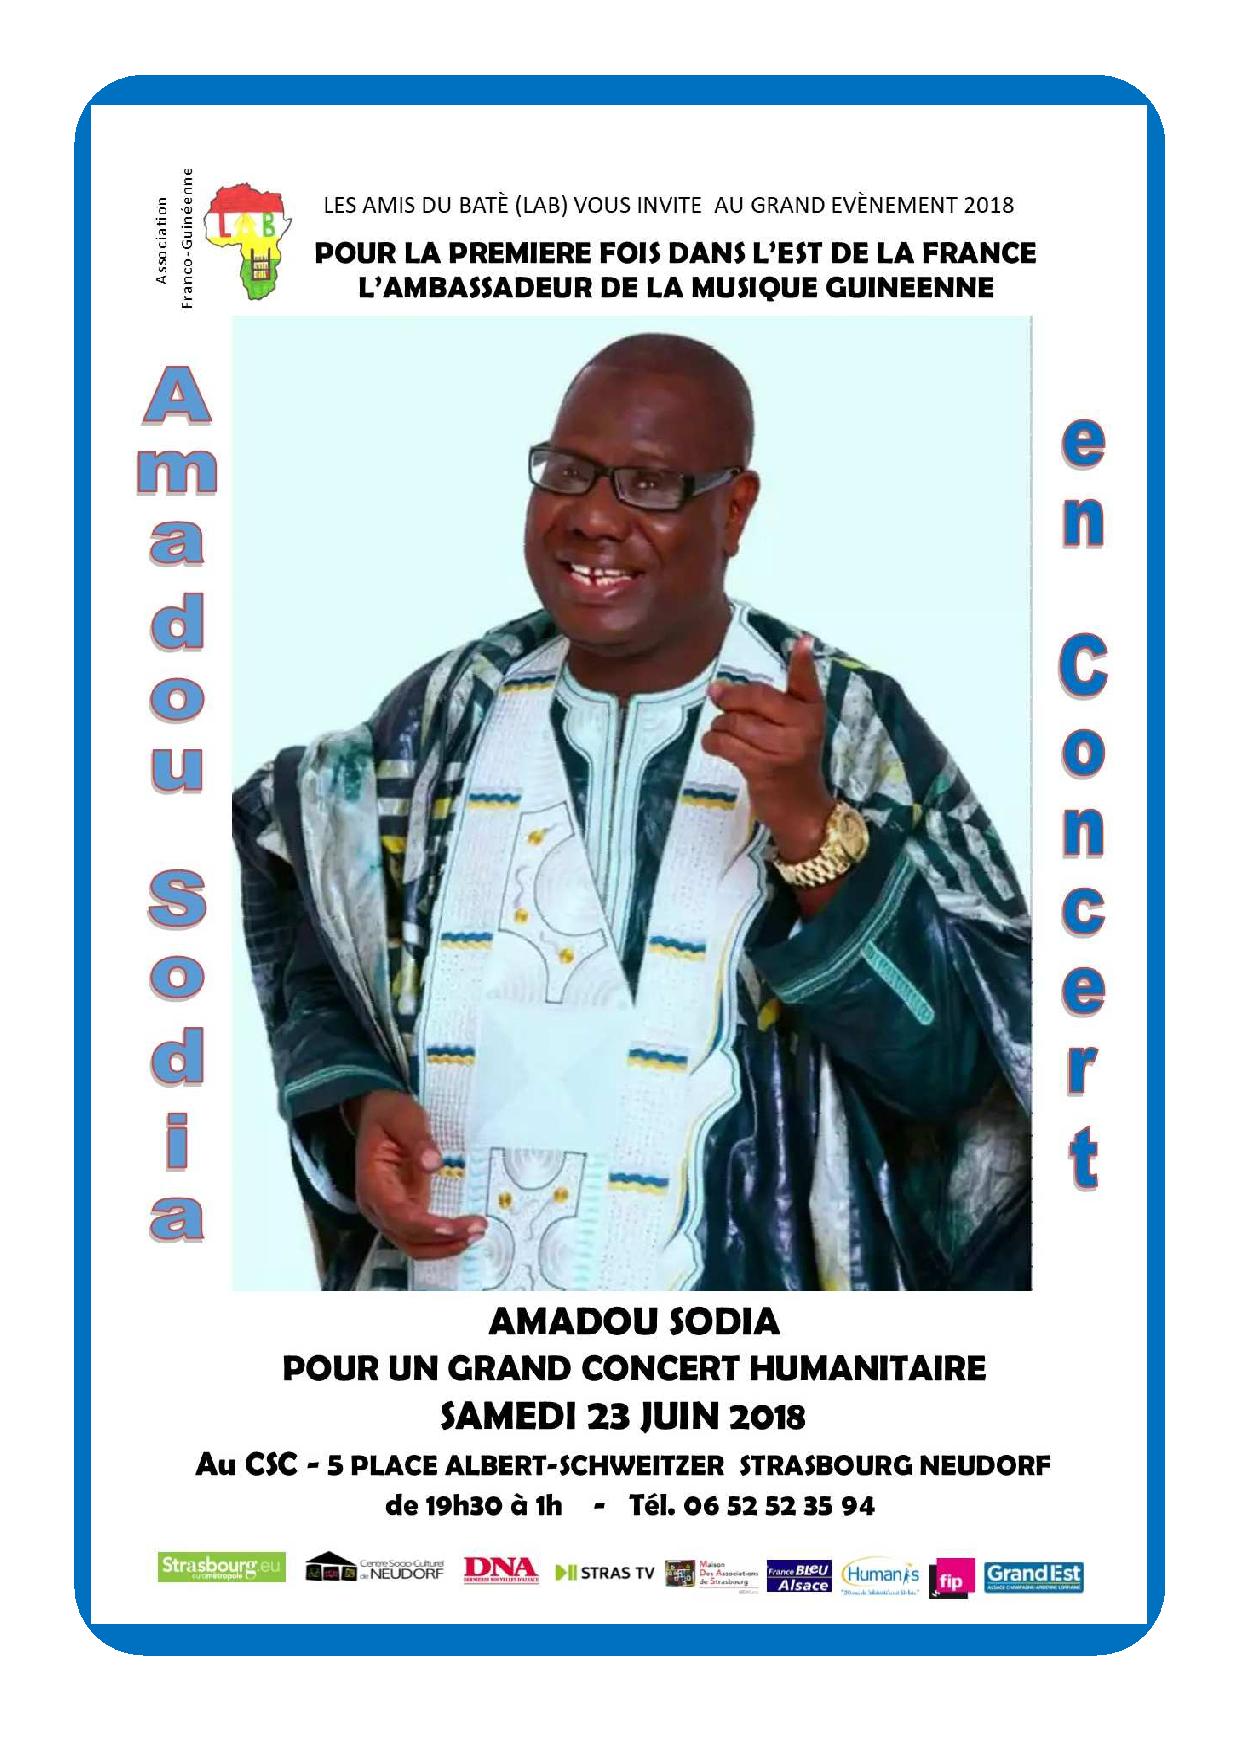 Concert Humanitaire d'Amadou SODIA